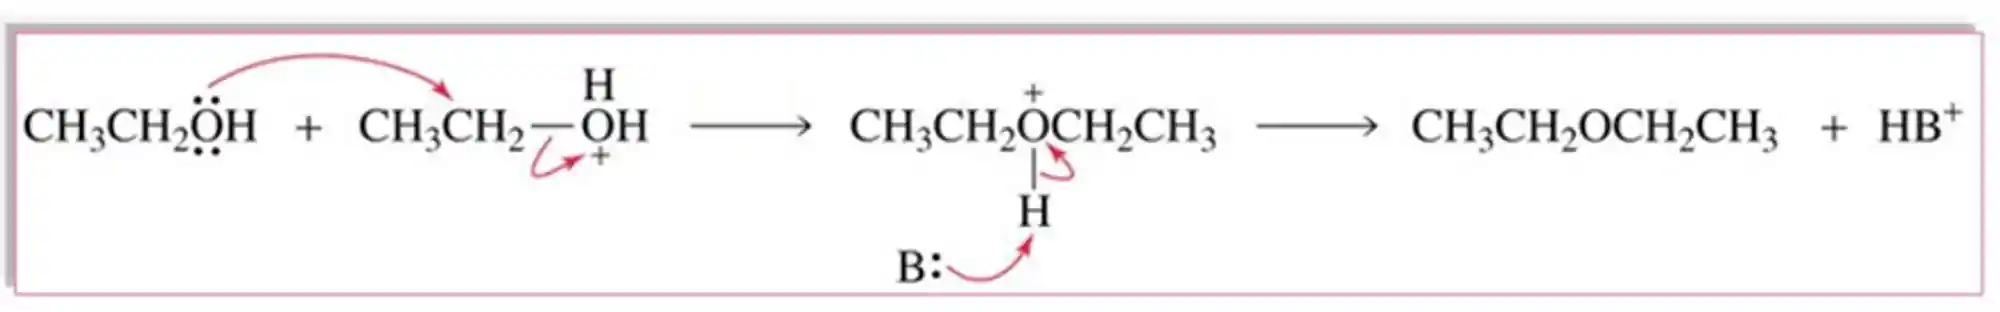 Mecanismo de uma reação de desidrataçãoo intramolecular